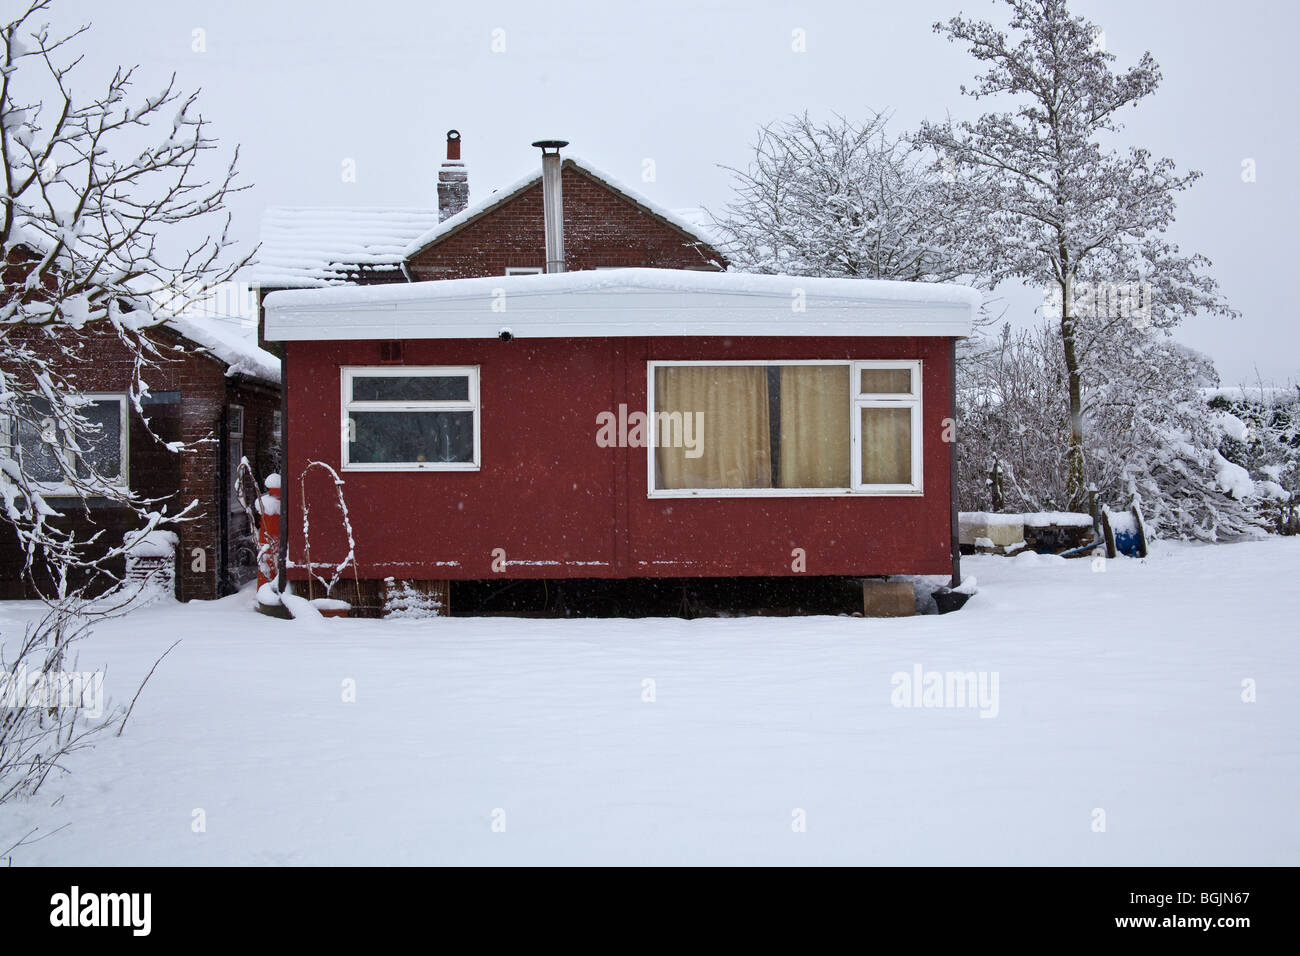 Mobile home ou caravane statique dans la neige Hampshire en Angleterre. Banque D'Images